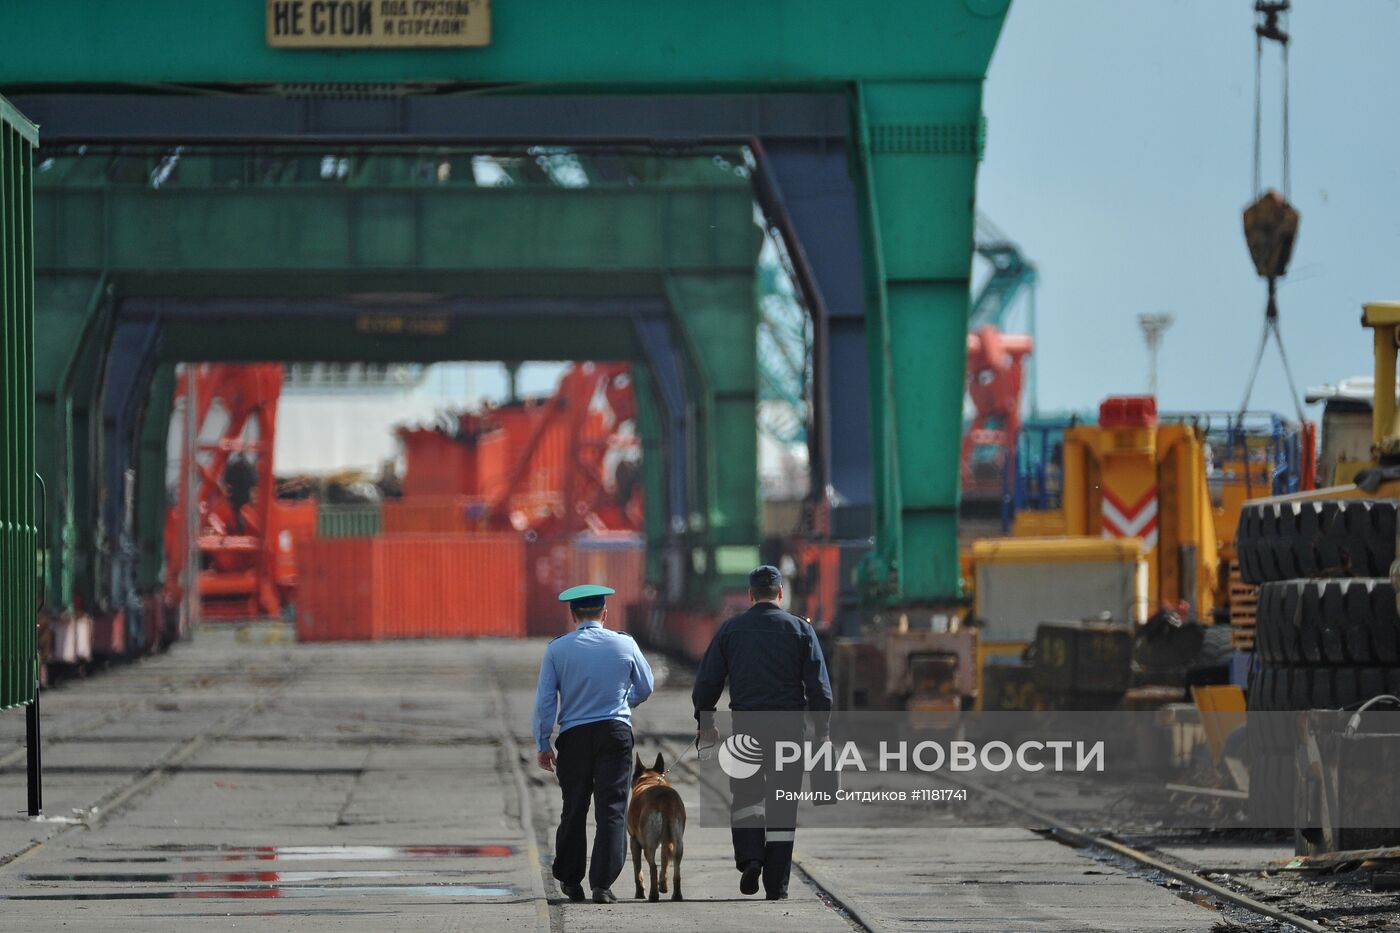 Работа Архангельского морского торгового порта